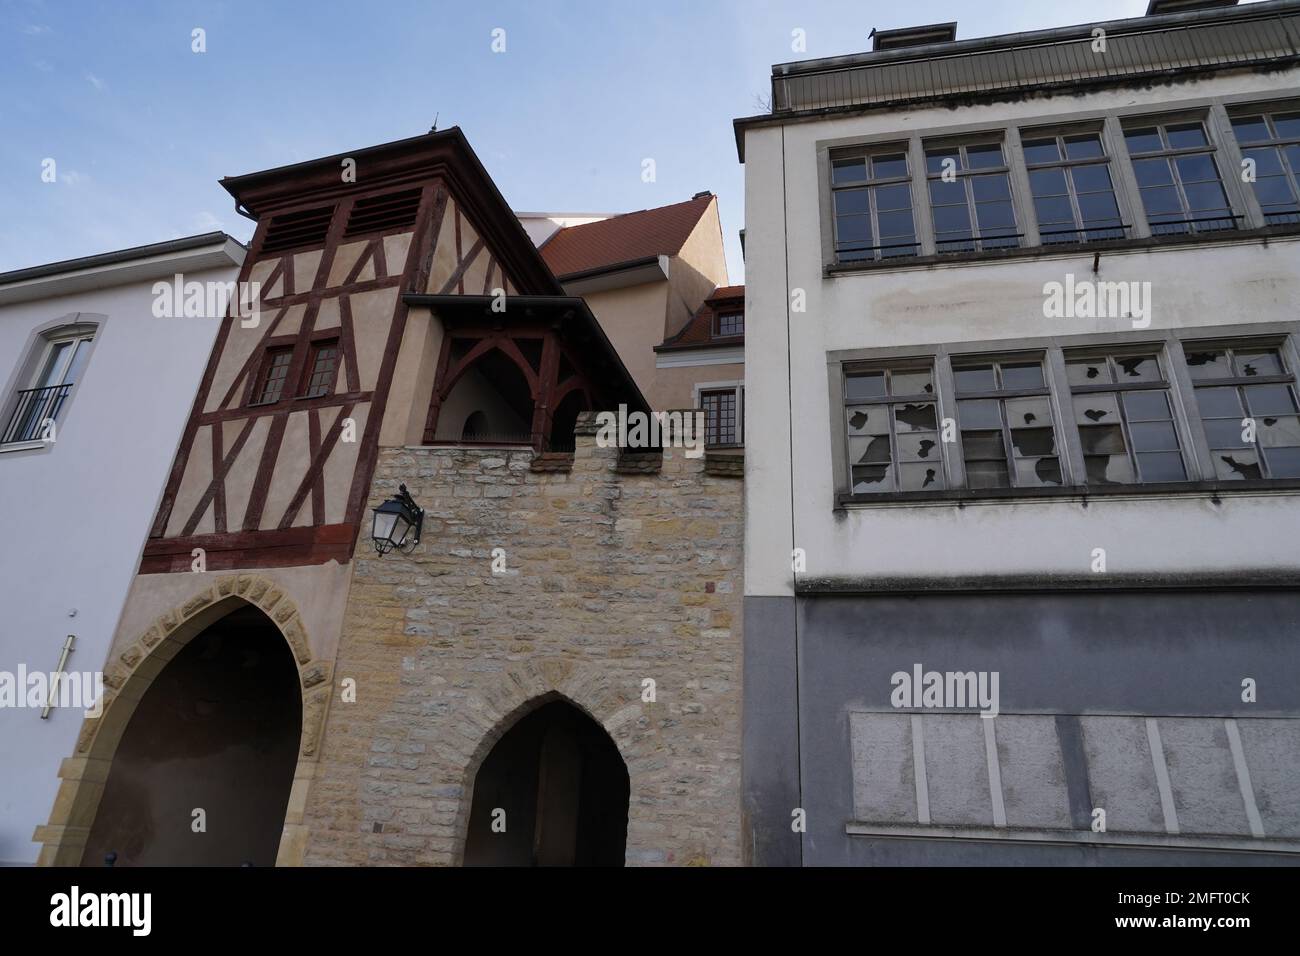 Bâtiment historique à colombages et à côté d'un bâtiment contemporain à Altkirch en France. Banque D'Images